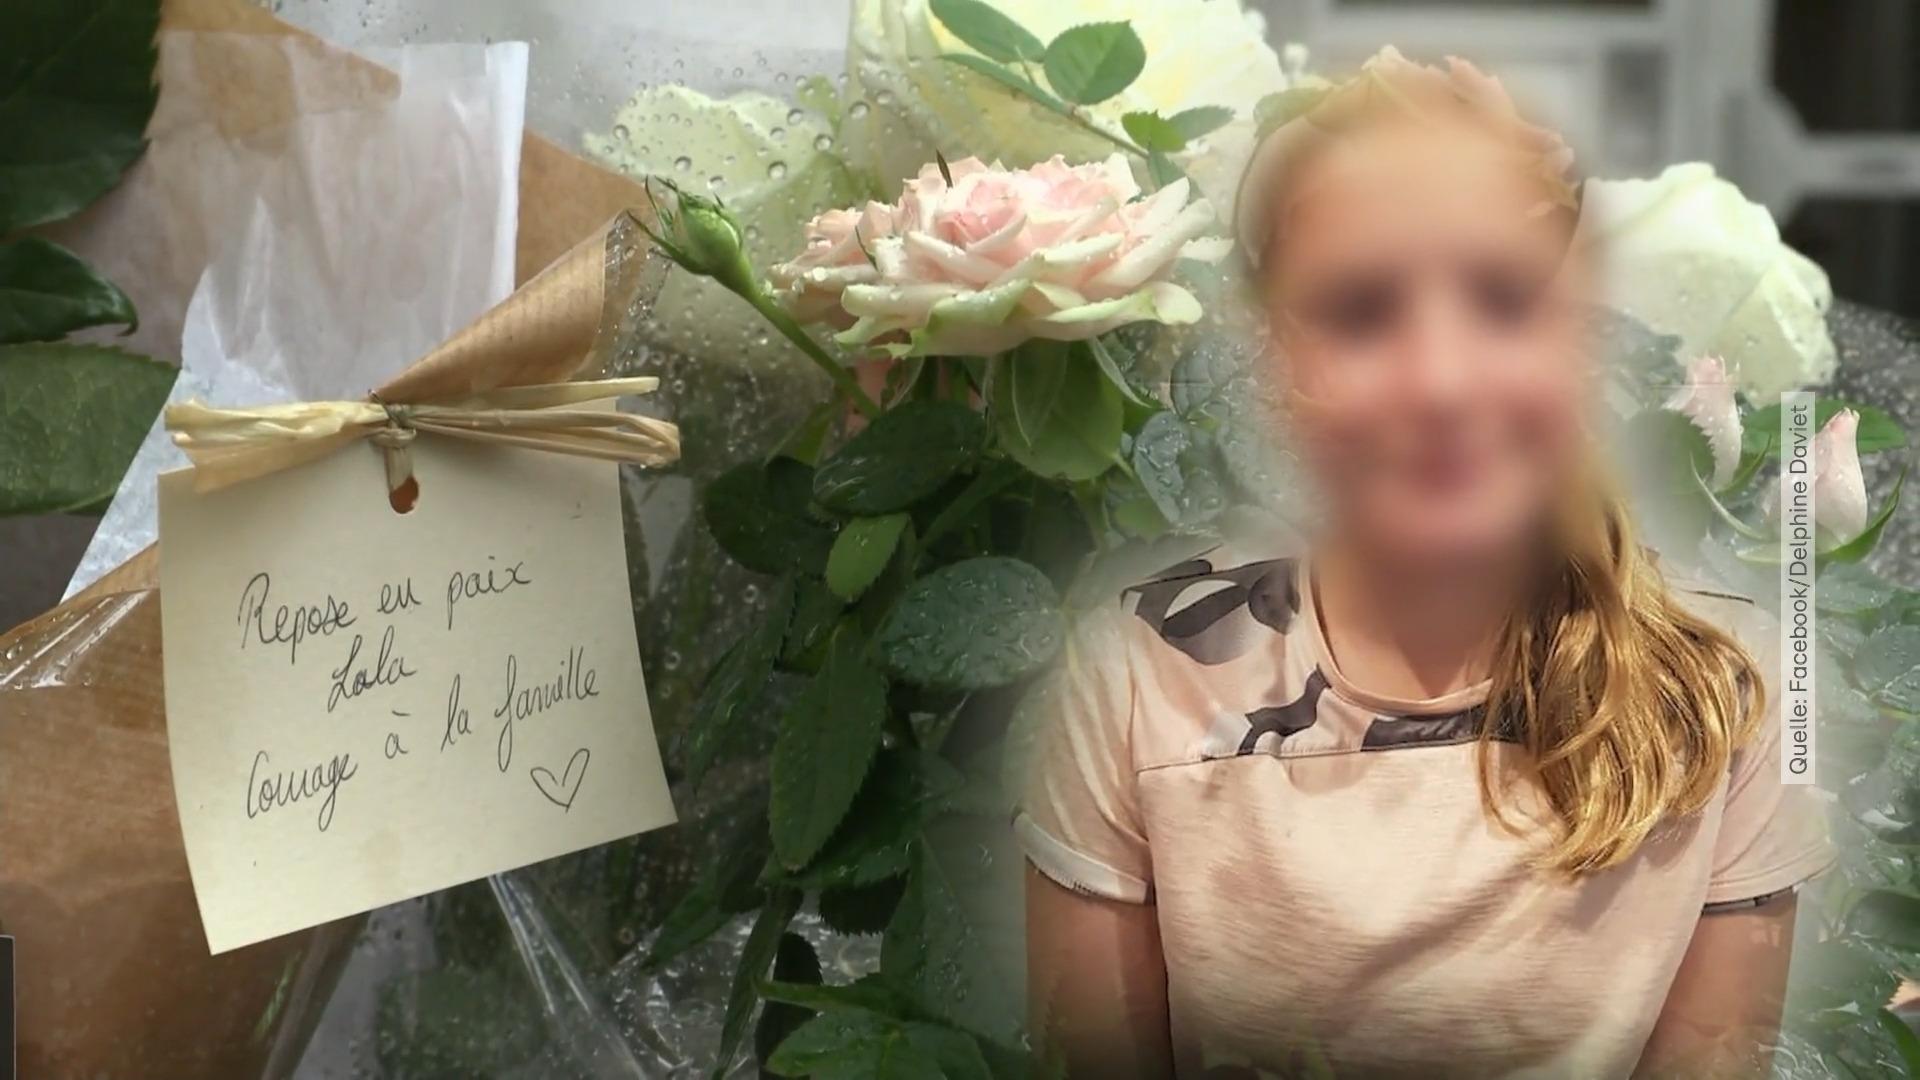 Il corpo della ragazza è stato trovato in una borsa del delitto a Parigi